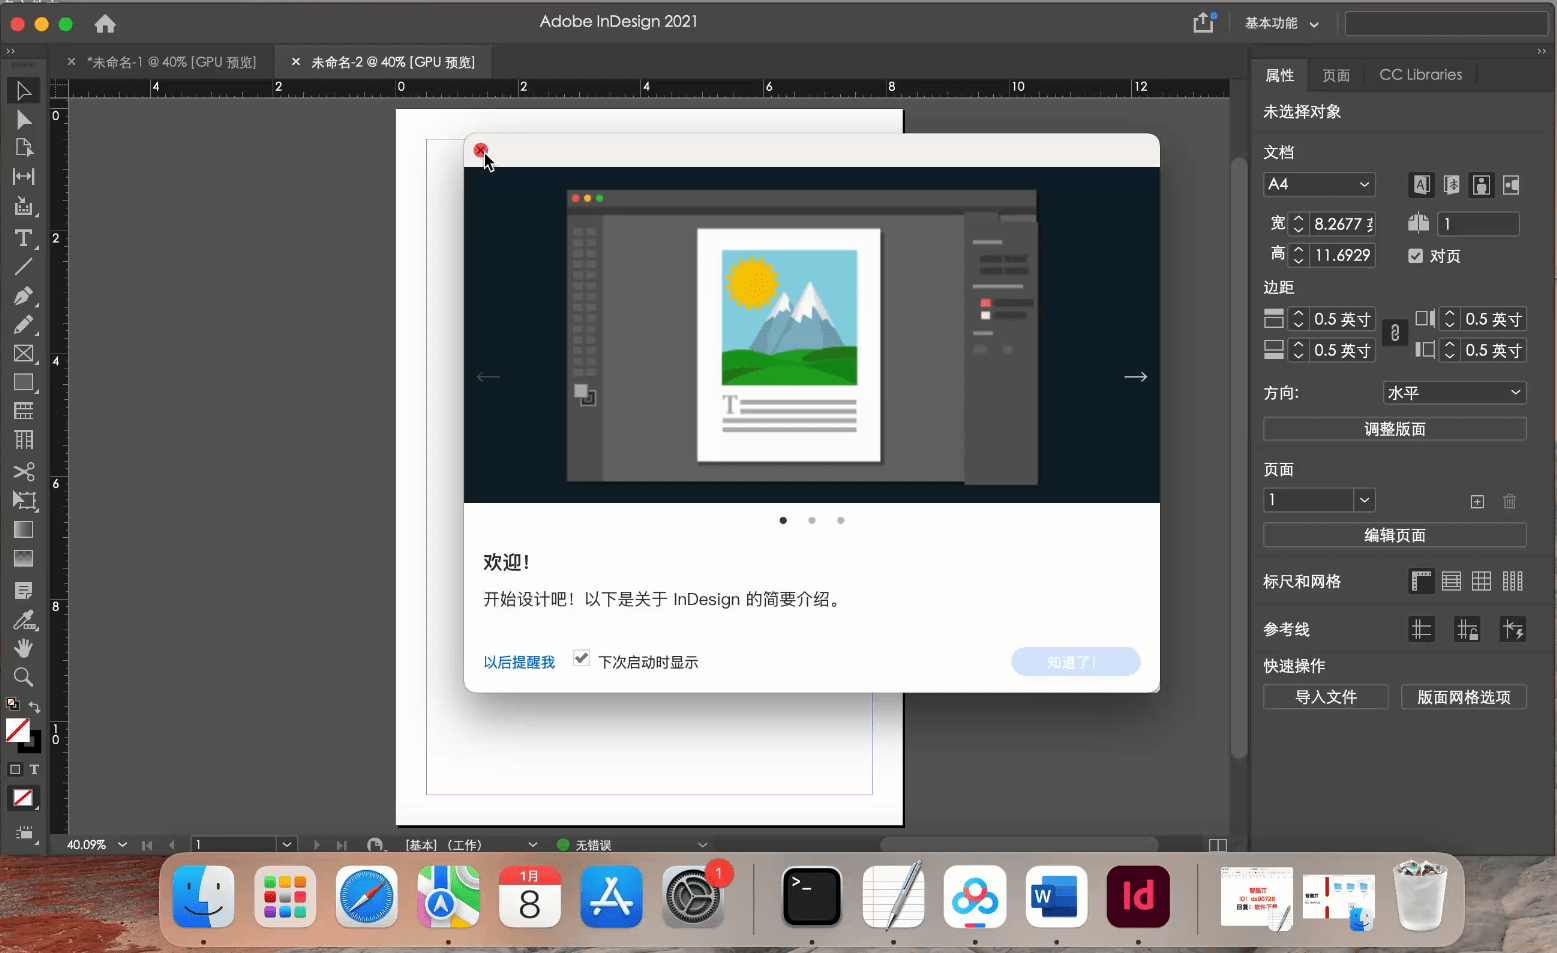 【附安装包】苹果Mac ID软件2021版本InDesign2021中文下载、安装教程，支持M1